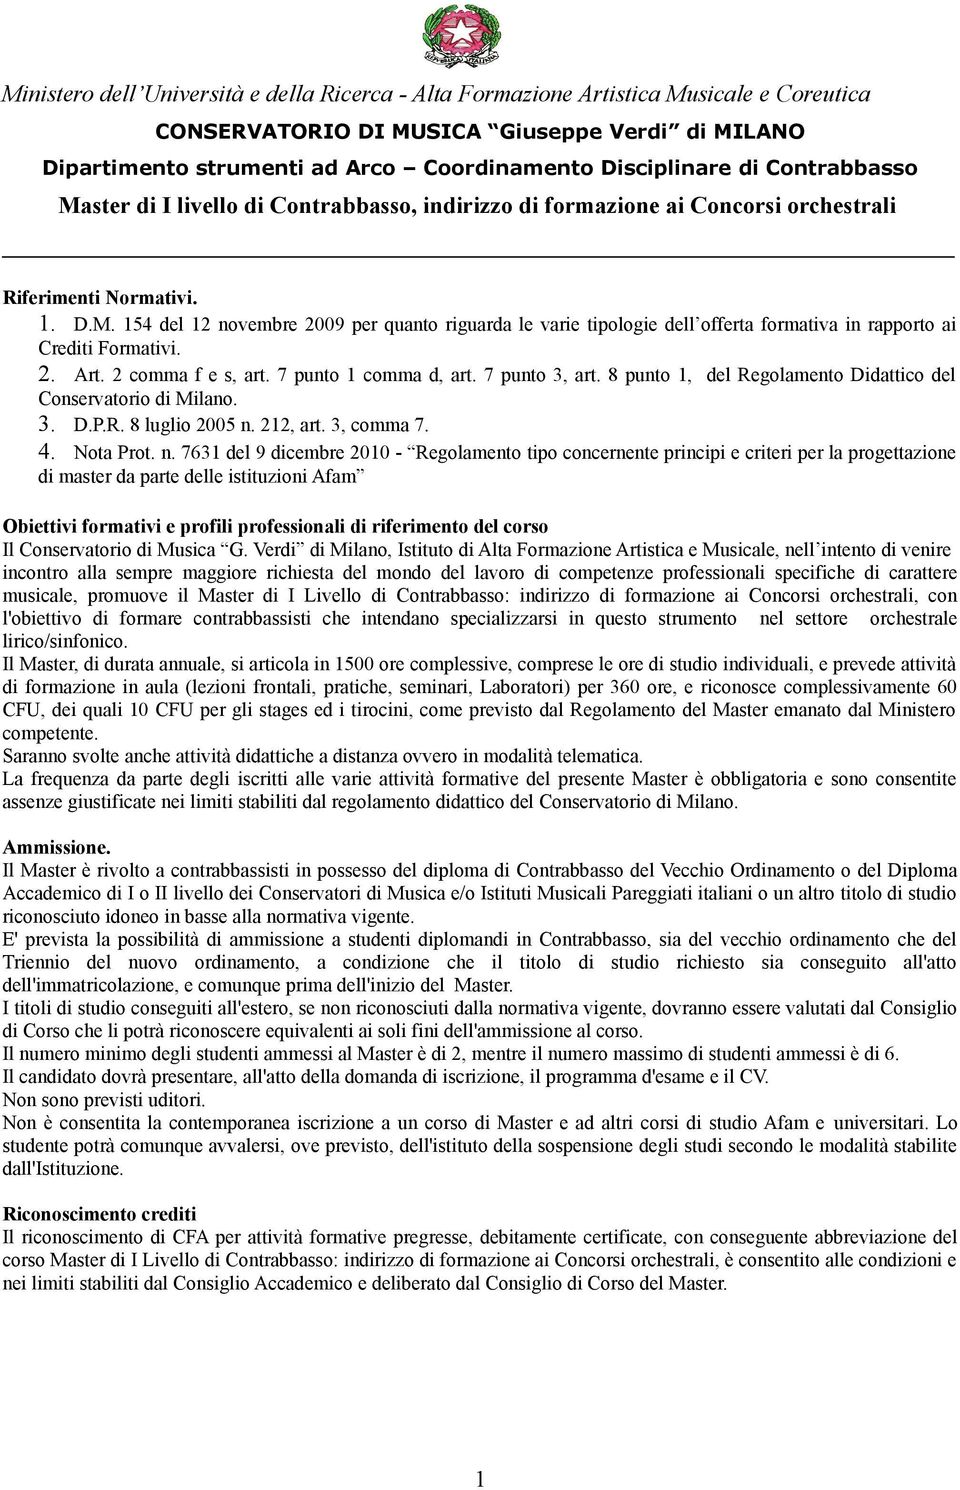 7 punt 1 cmma d, art. 7 punt 3, art. 8 punt 1, del Reglament Didattic del Cnservatri di Milan. 3. D.P.R. 8 lugli 2005 n.